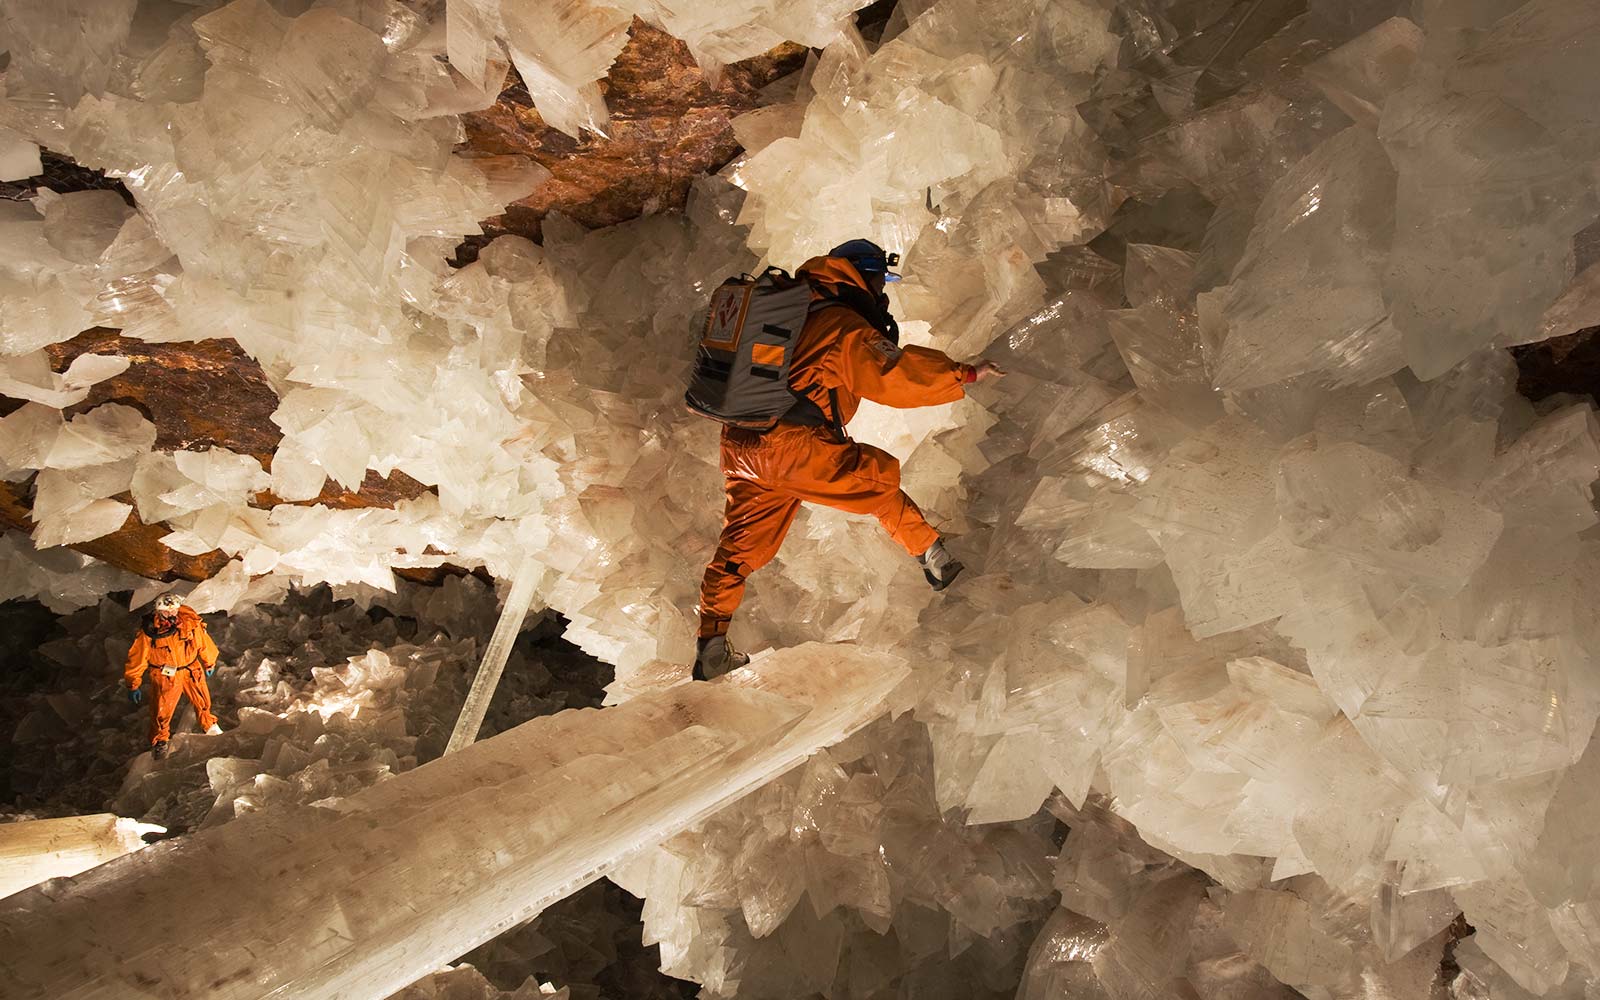 Пещера в Мексике с гигантскими кристаллами — Сикстинская капелла кристаллов!